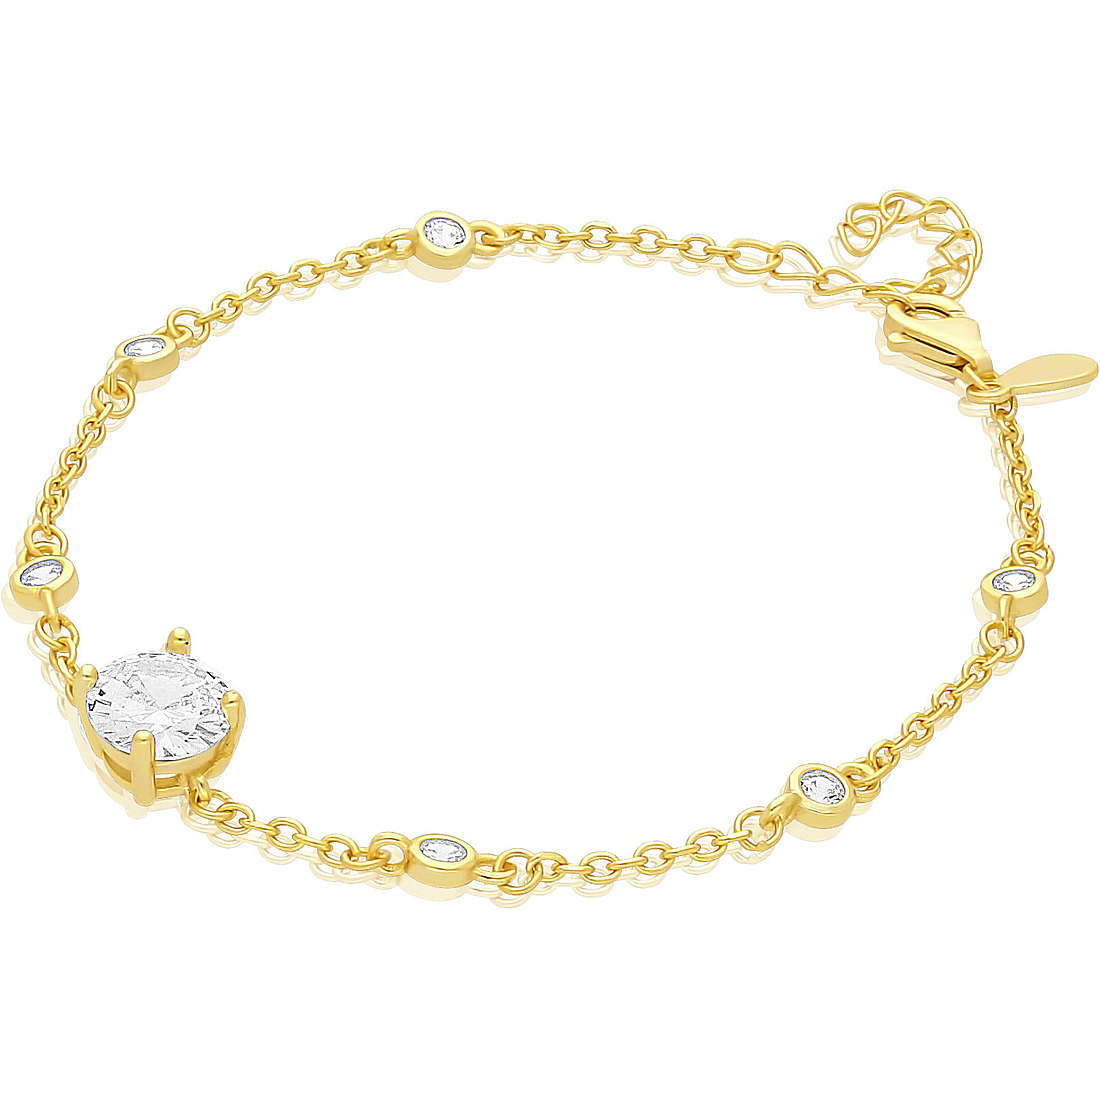 bracelet woman Chain 925 Silver jewel GioiaPura INS028BR335PLWH